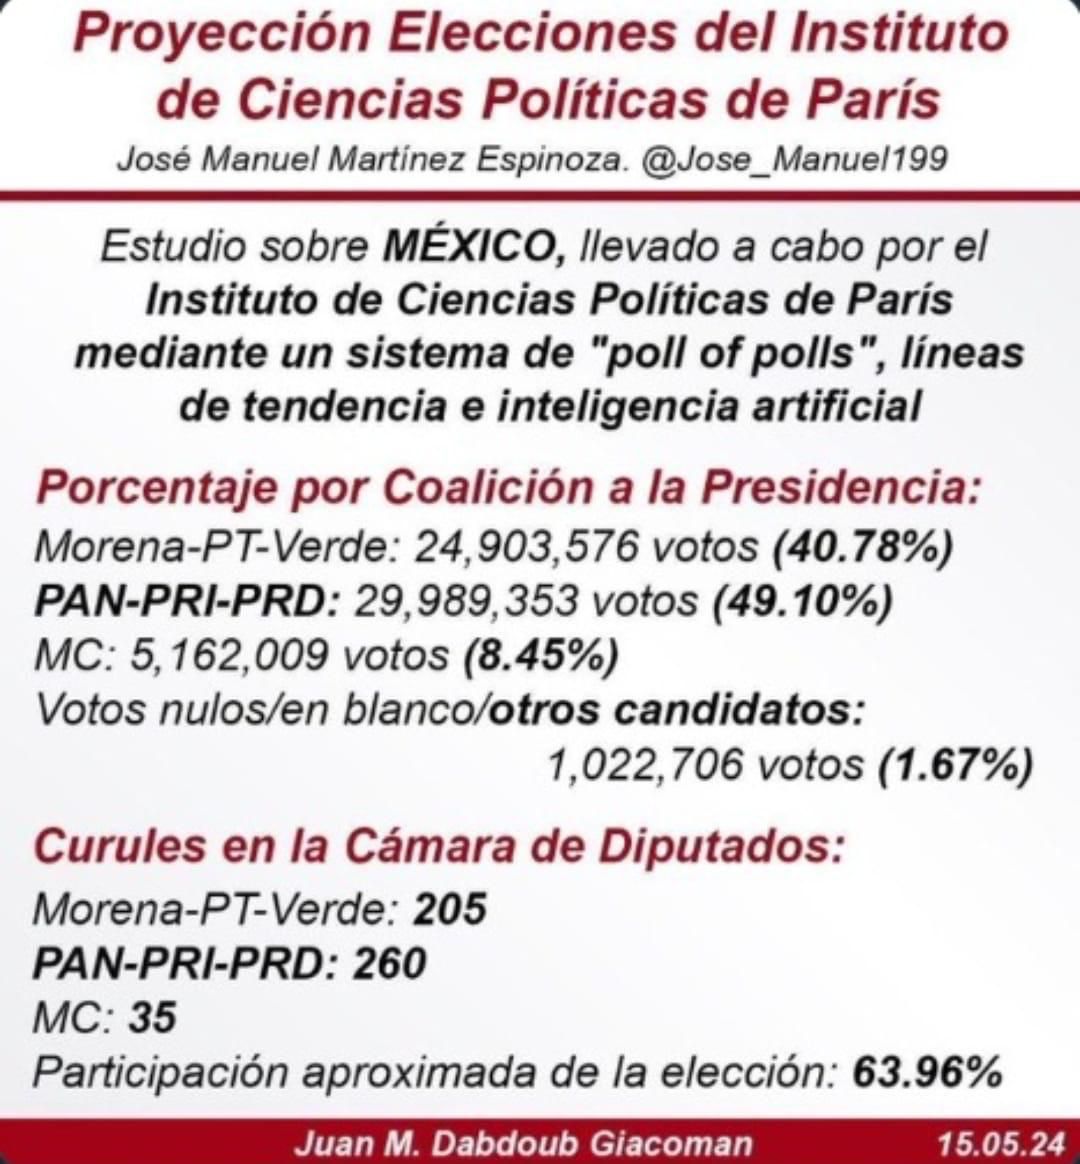 Es el tiempo de concretar la Democracia en México y enderezar el rumbo ...
Creo ya la tenemos asegurada ,,, solo hay que ir a votar y despertar de la pesadilla.
#morenadestruyendoaméxico 
#MORENAesCORRUPCIÓN 
#FueraMorena2024
#XochitlGálvezPresidenta